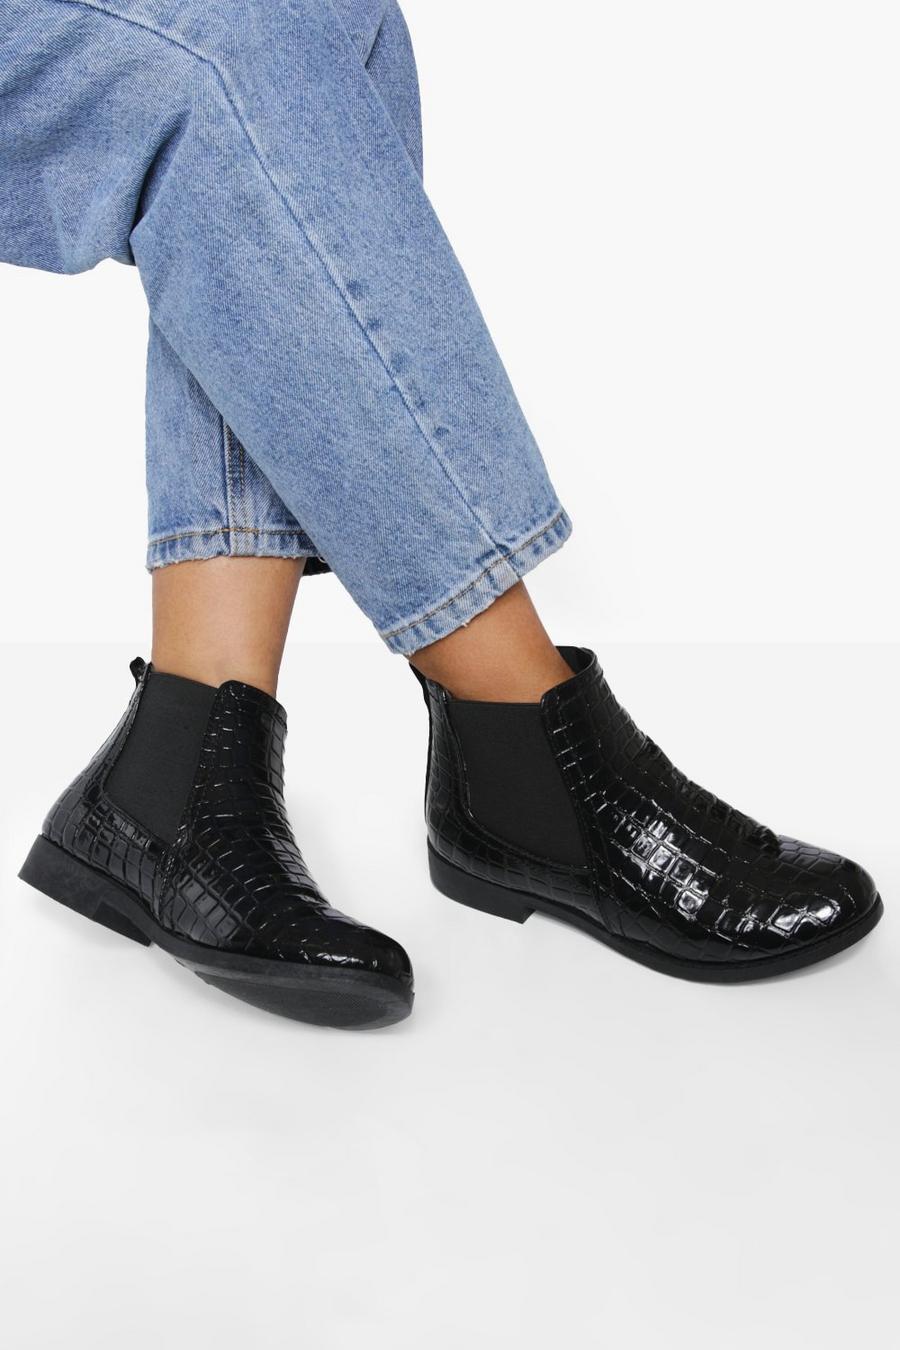 Black Patent Croc Chelsea Boots